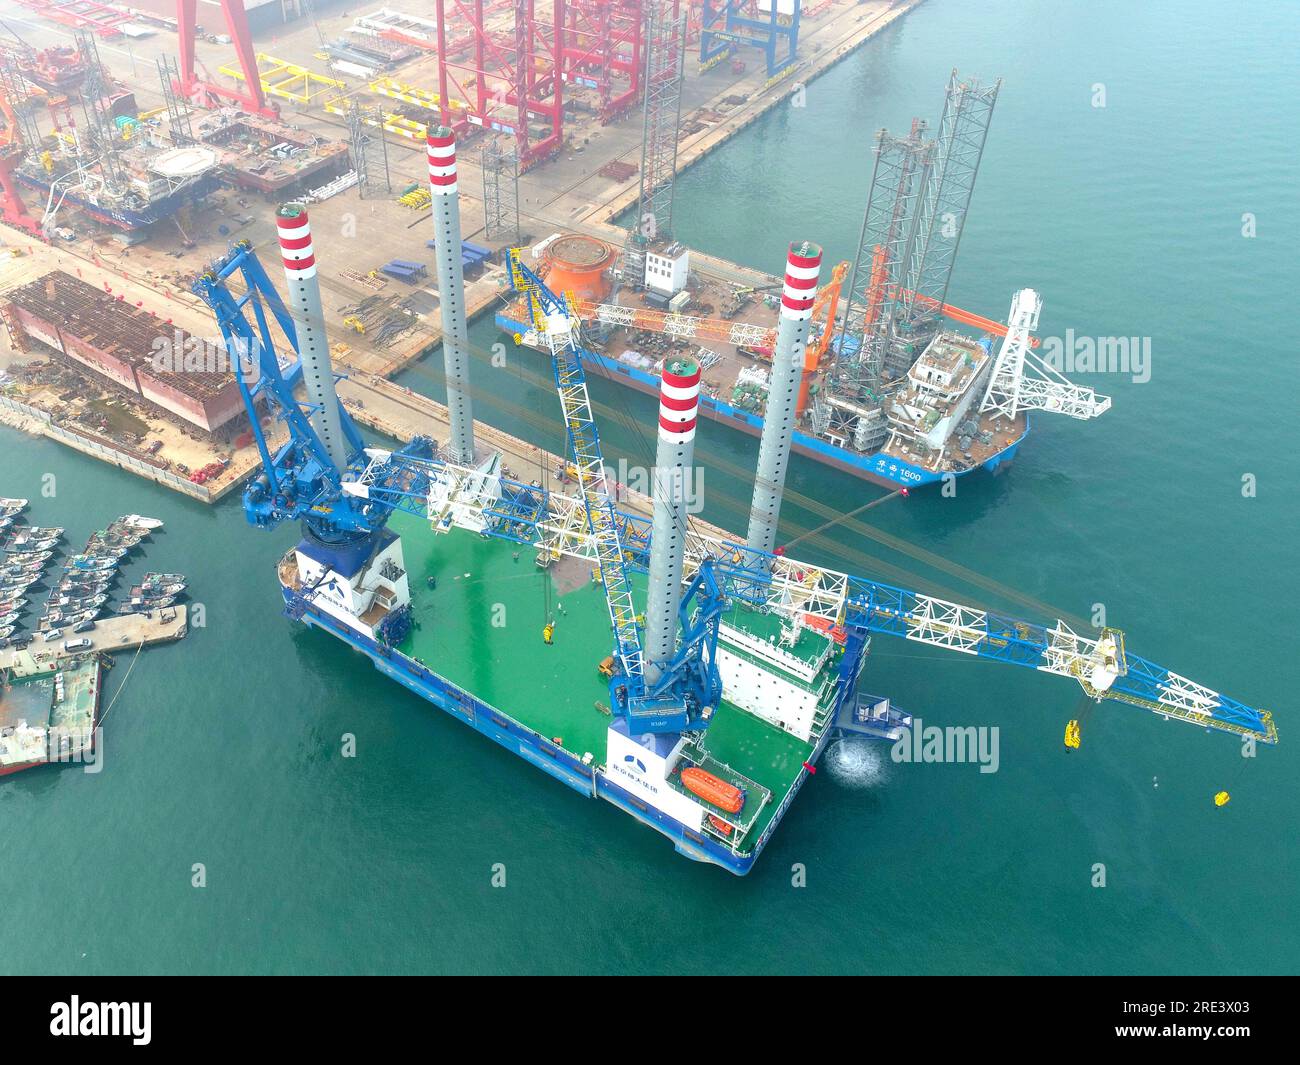 Die 1.200-Tonnen-Offshore-Windenergieplattform „Huaxia Jinrent Shenda 01“, gebaut vom chinesischen Schiff Wuhan Shipbuilding Machinery, ist deliv Stockfoto